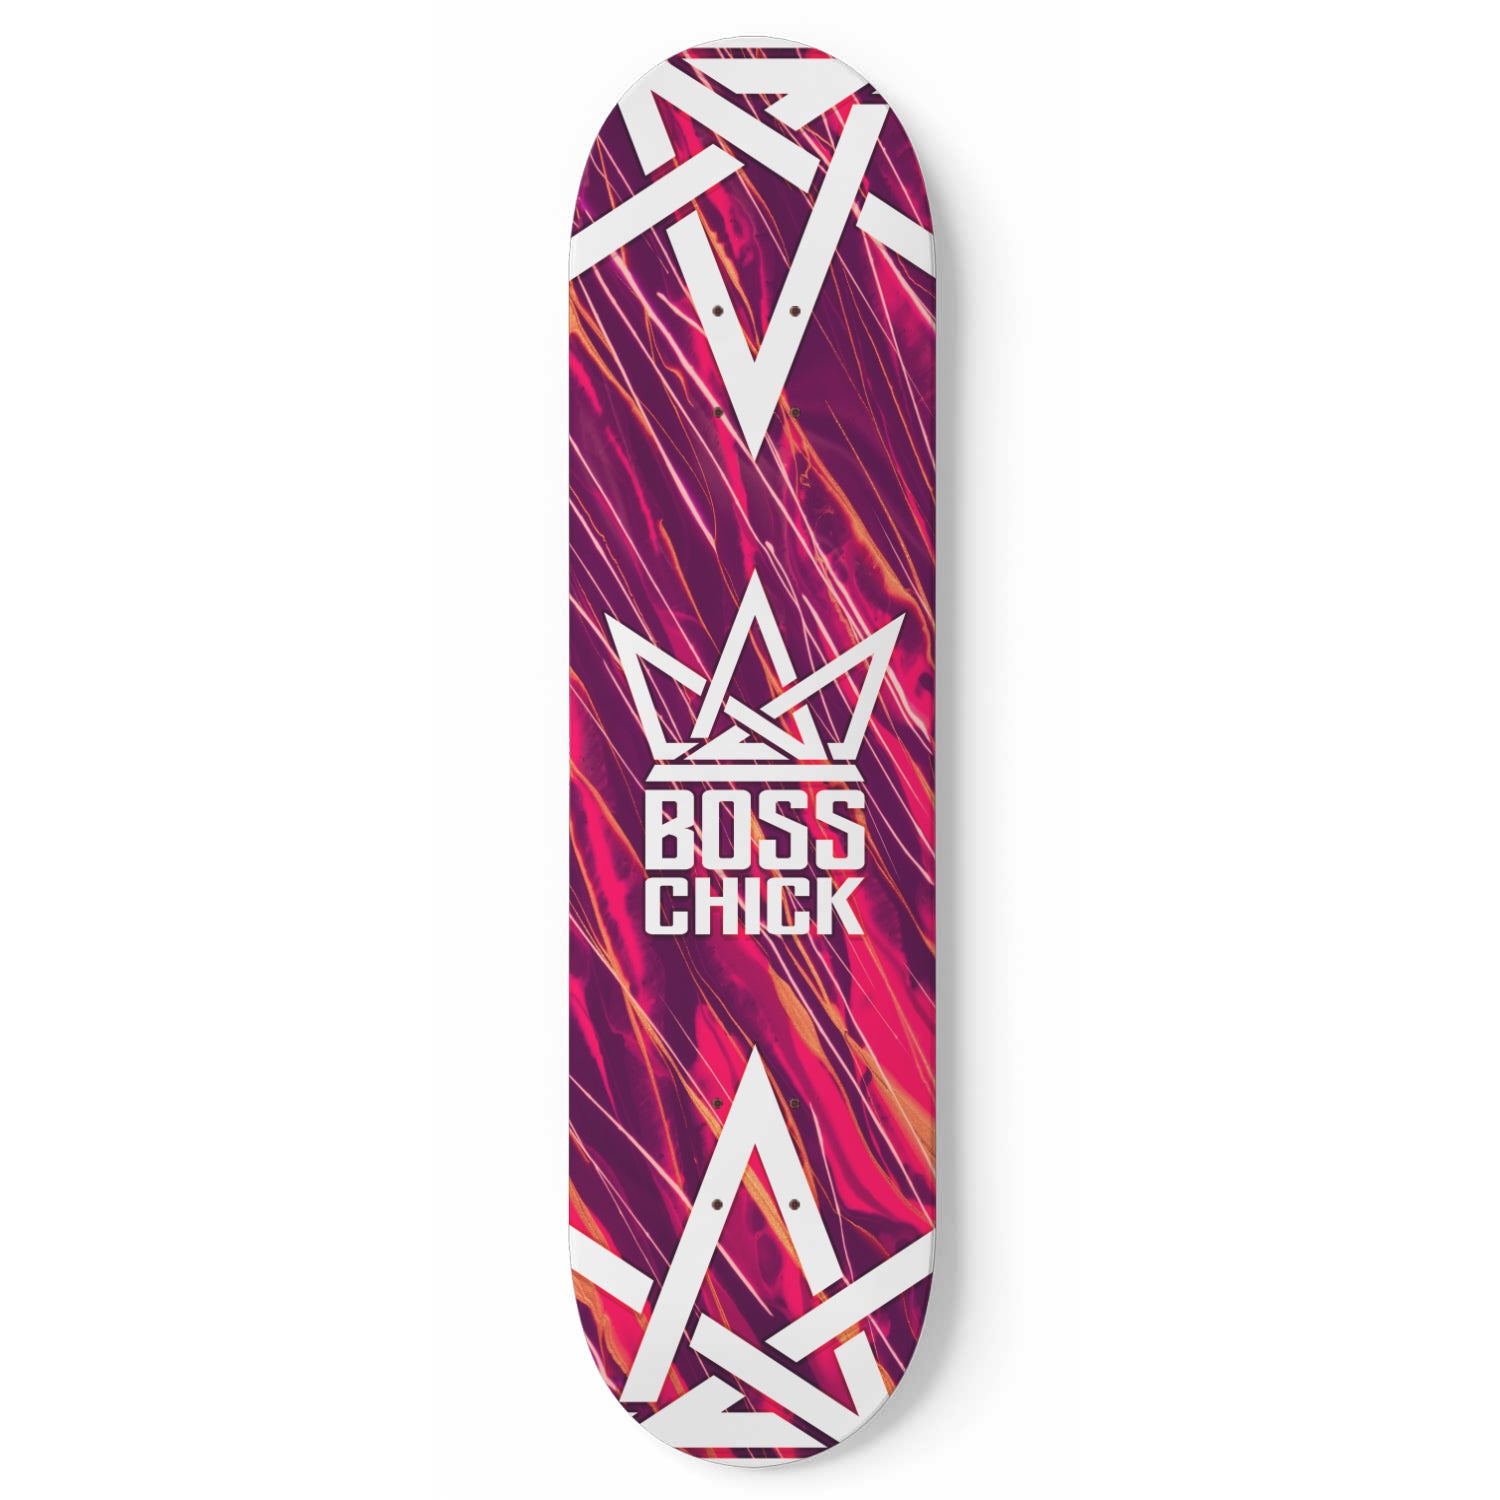 BOSS CHICK Skateboard Deck